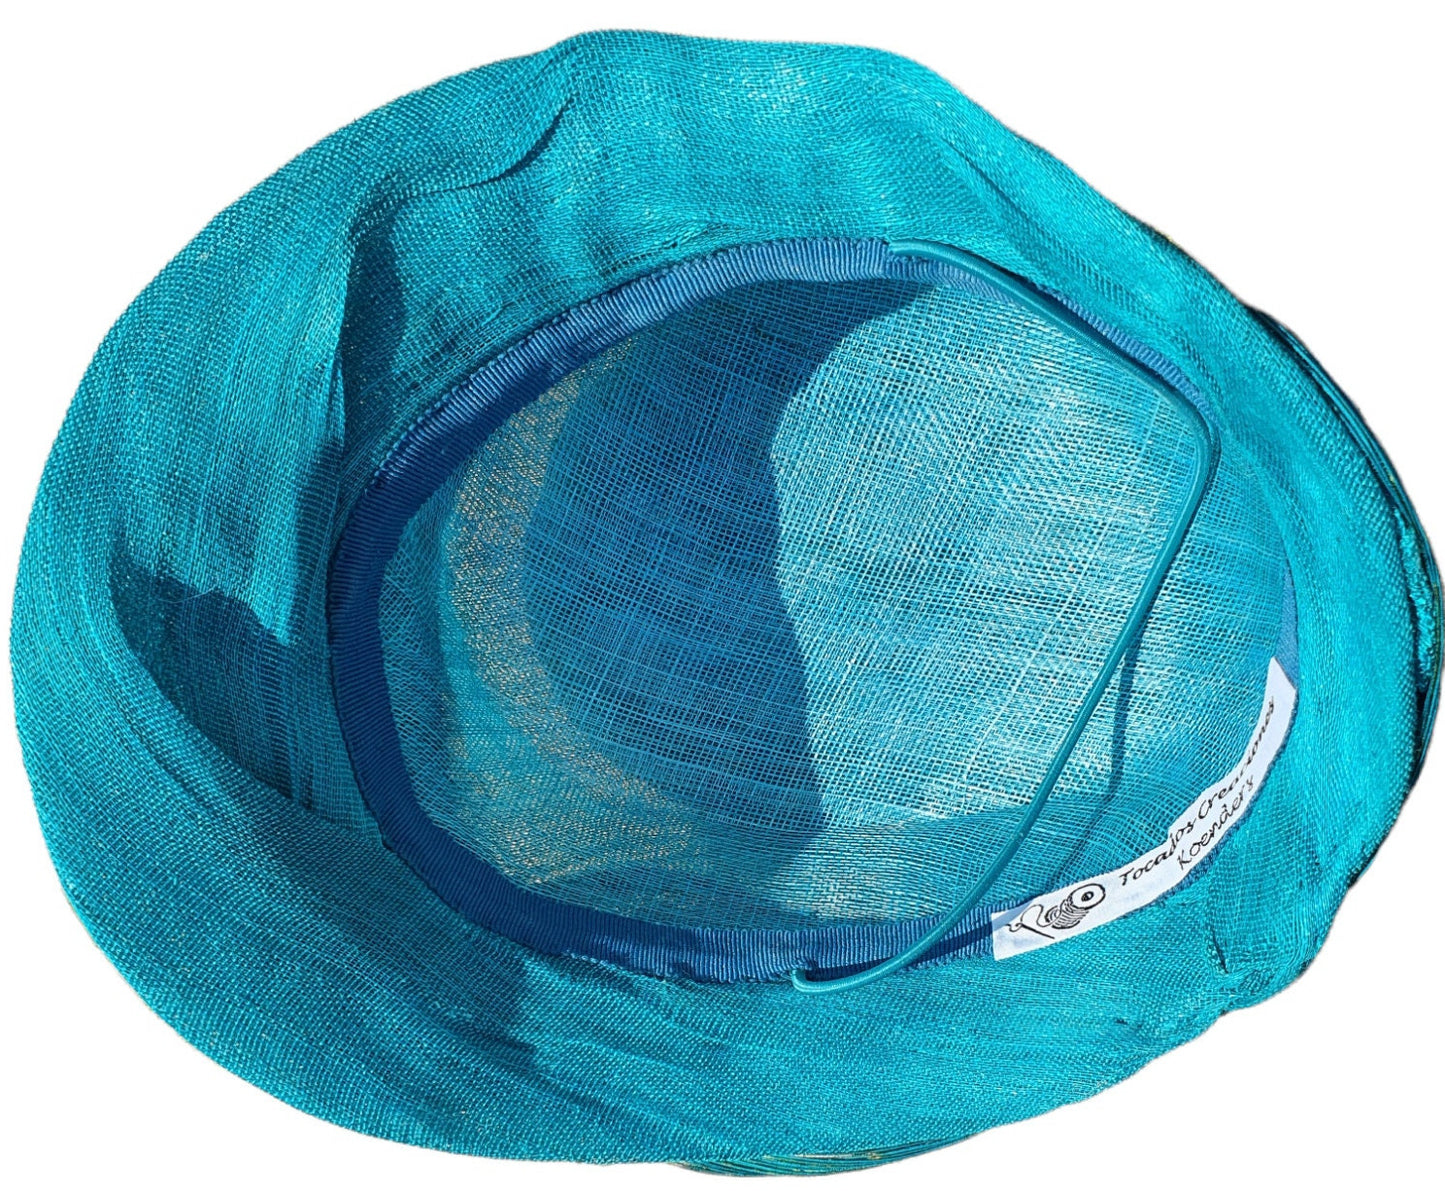 Elegante handgemaakte hoed van sinamay en abaca zijde voor dames, mooie groenblauwe hoed, evenementen, fascinator, feest